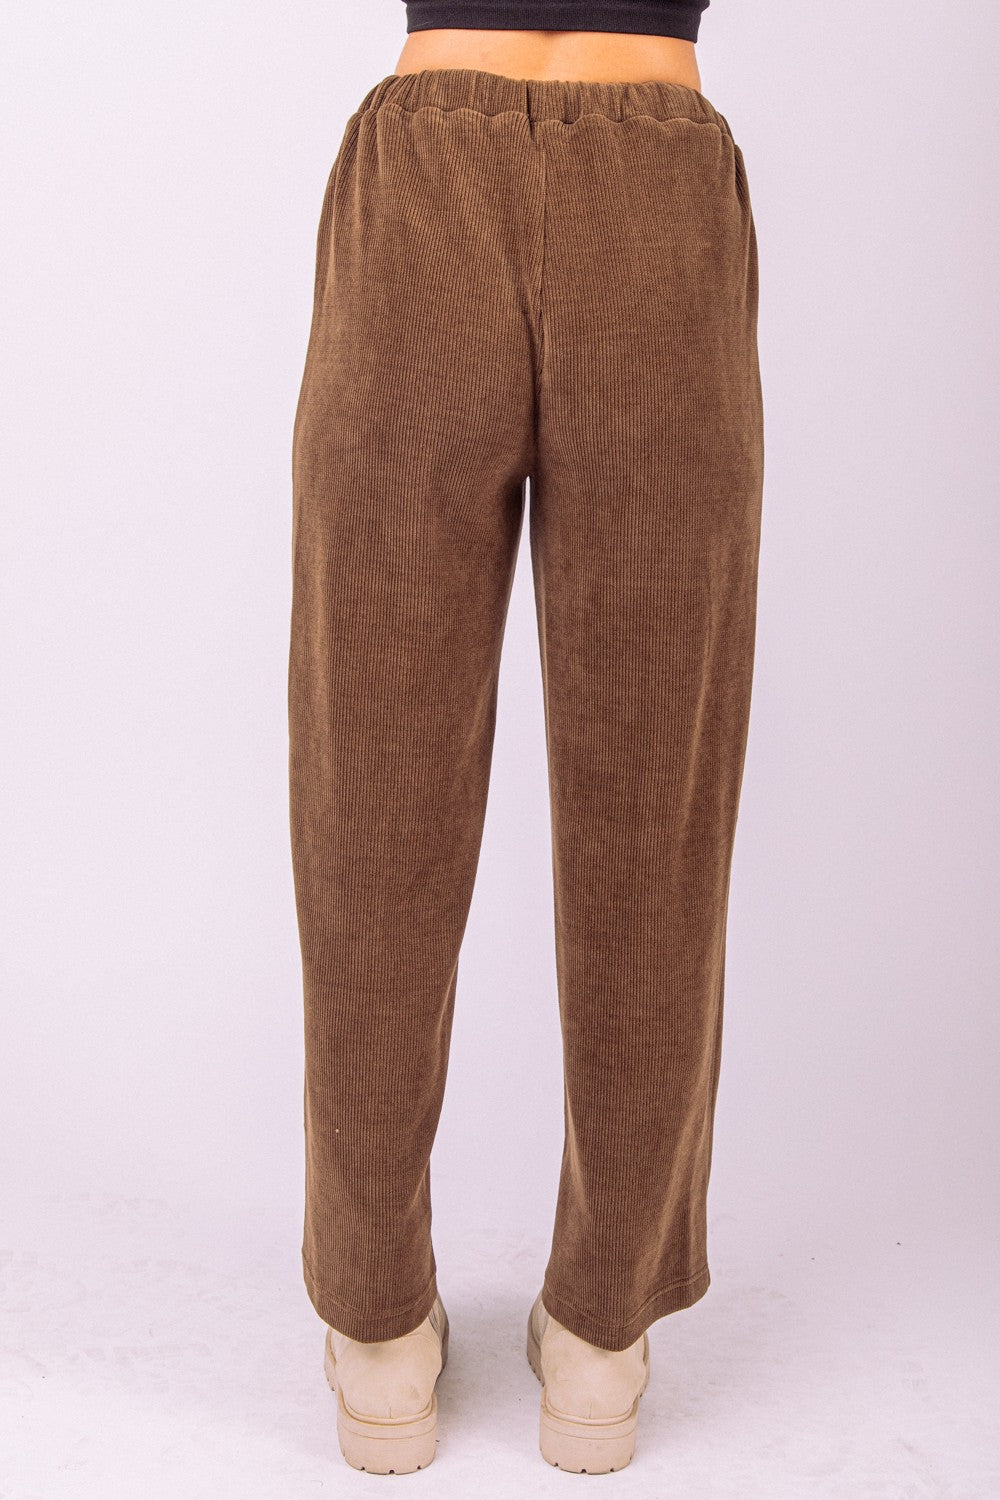 Plus Size Corduroy Pants - Multiple Colors